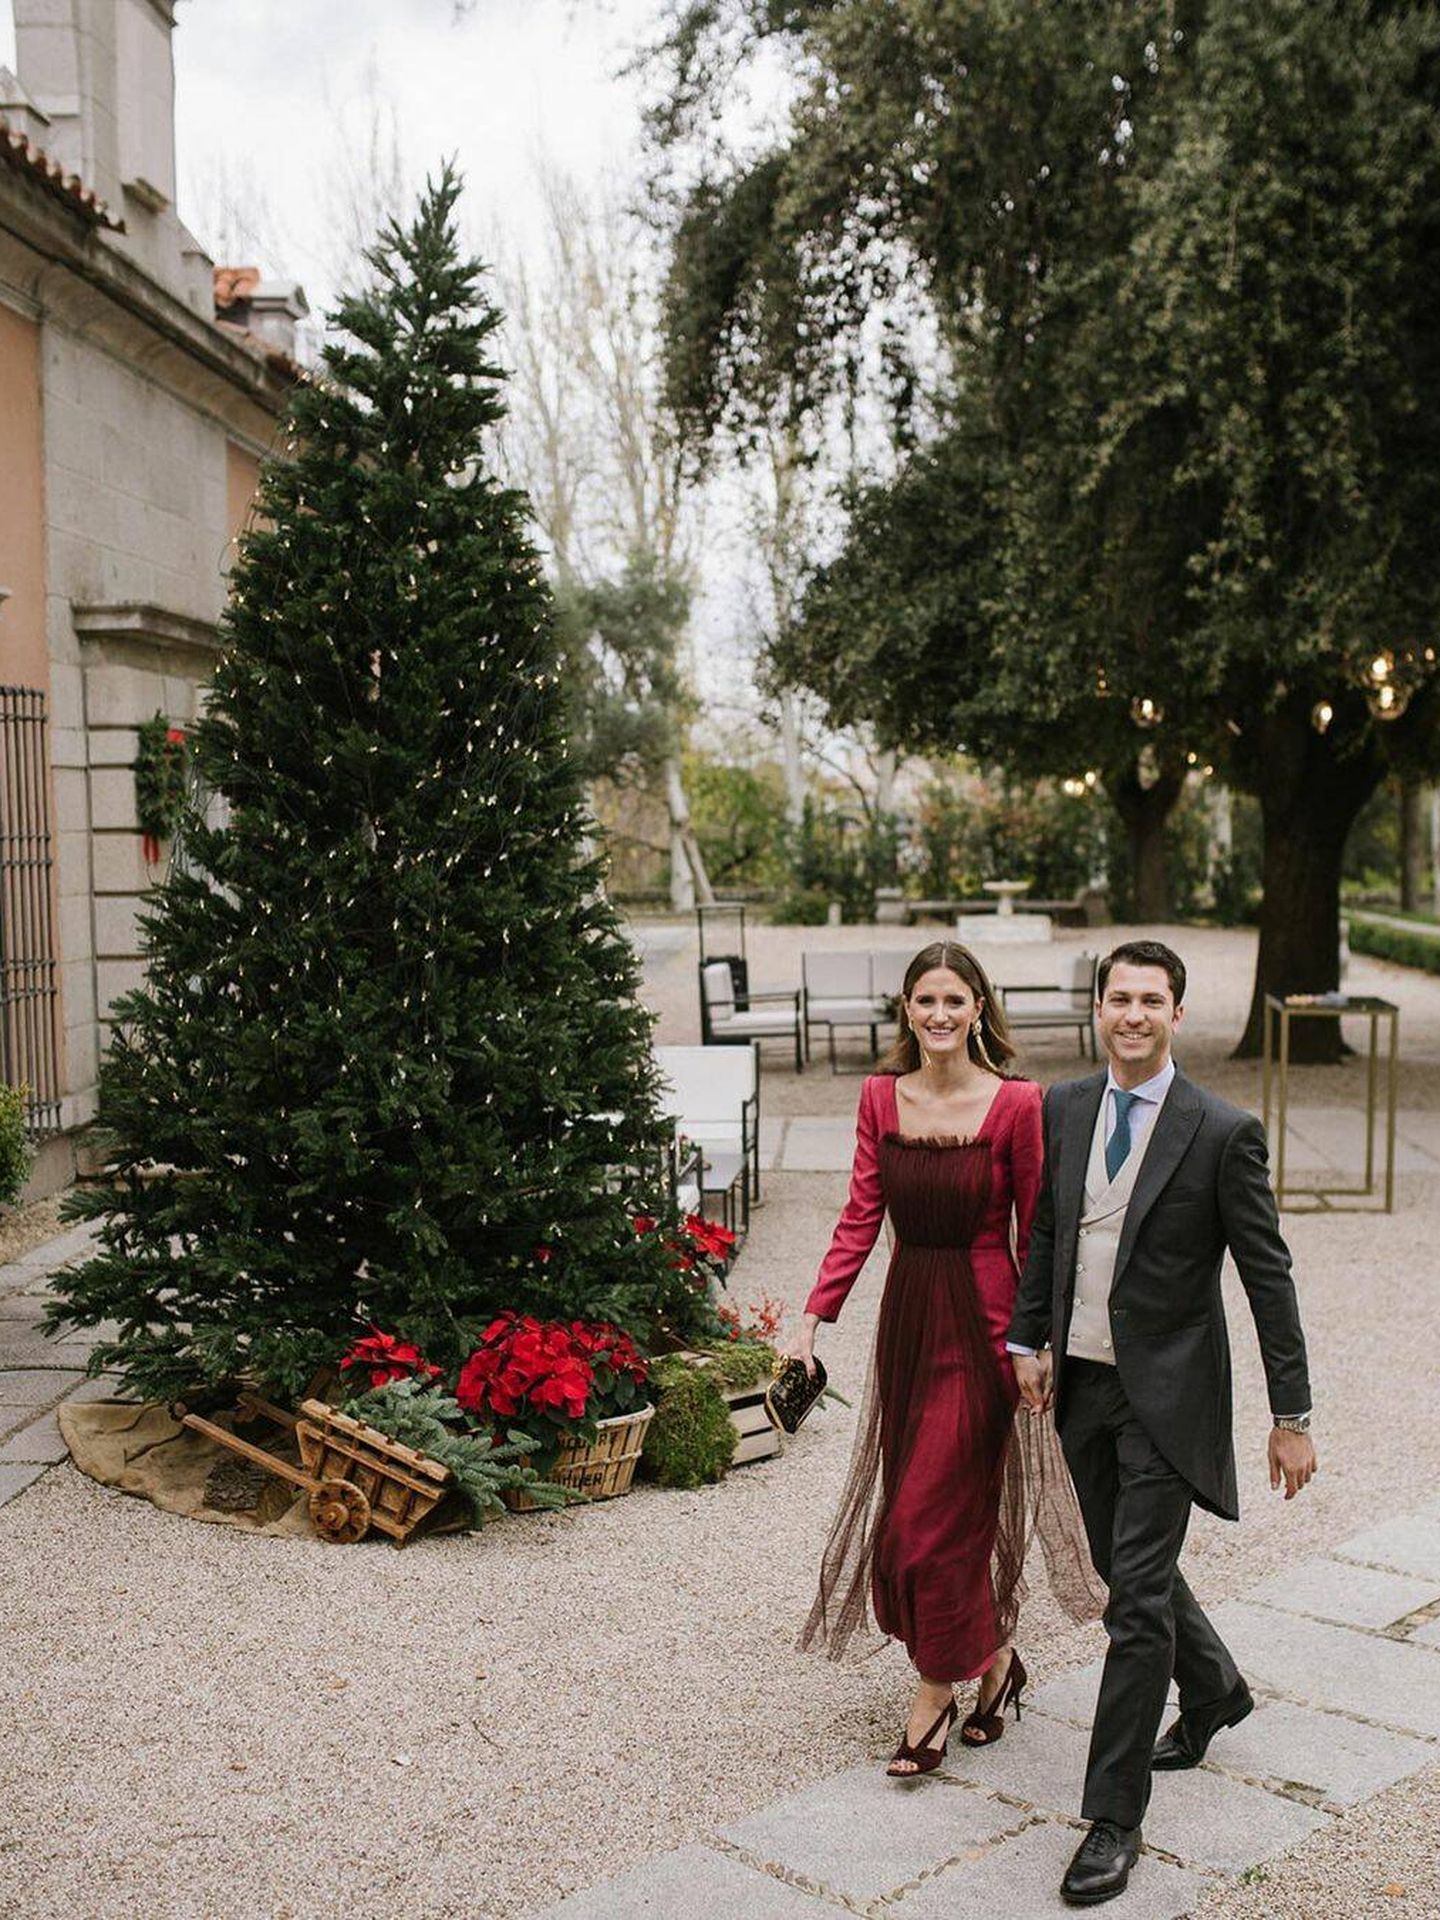 La boda en Navidad de Marta Pradas. (Instagram/ @pelillosderaton_wedding)